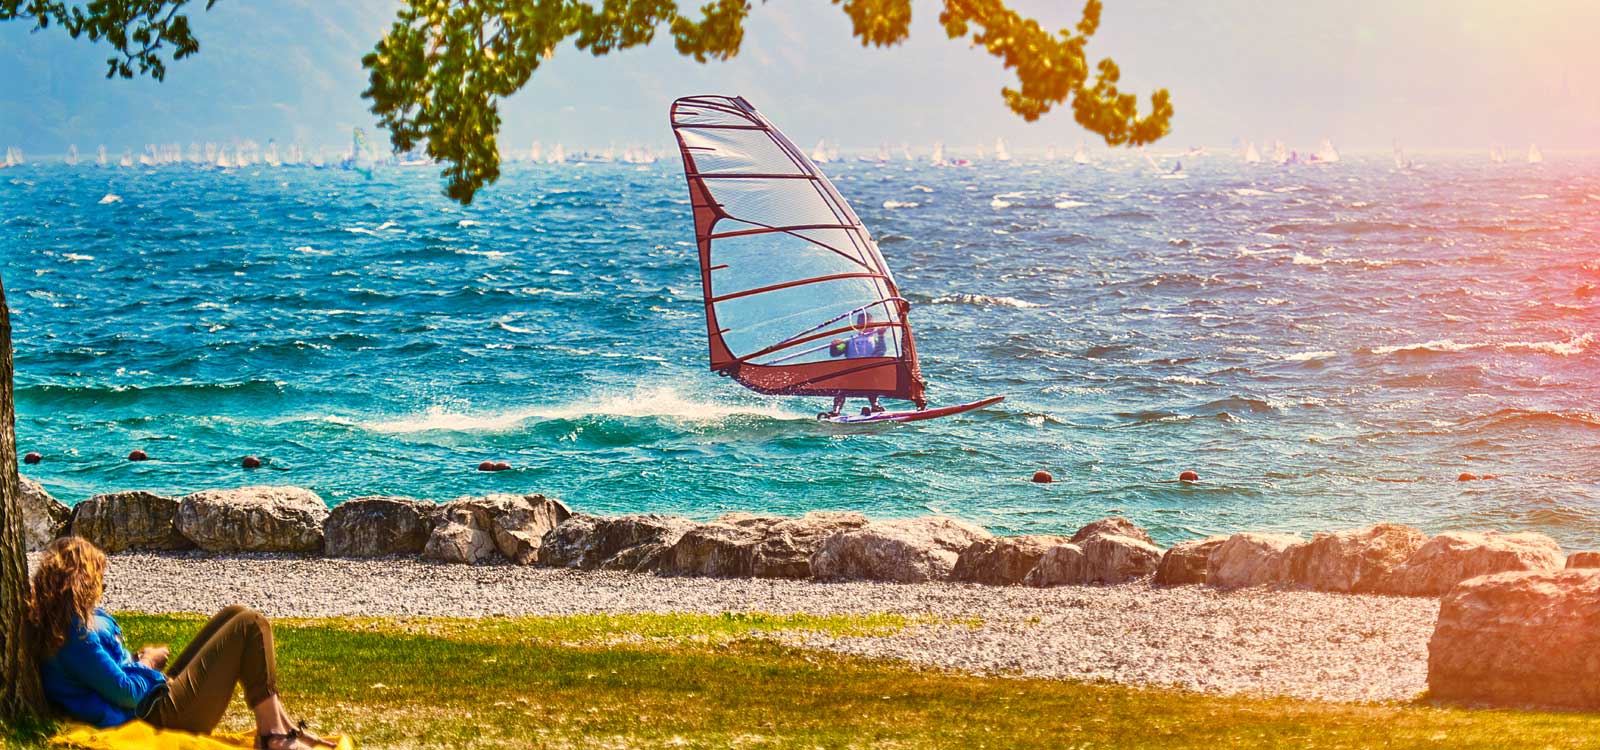 Sport on Lake Garda